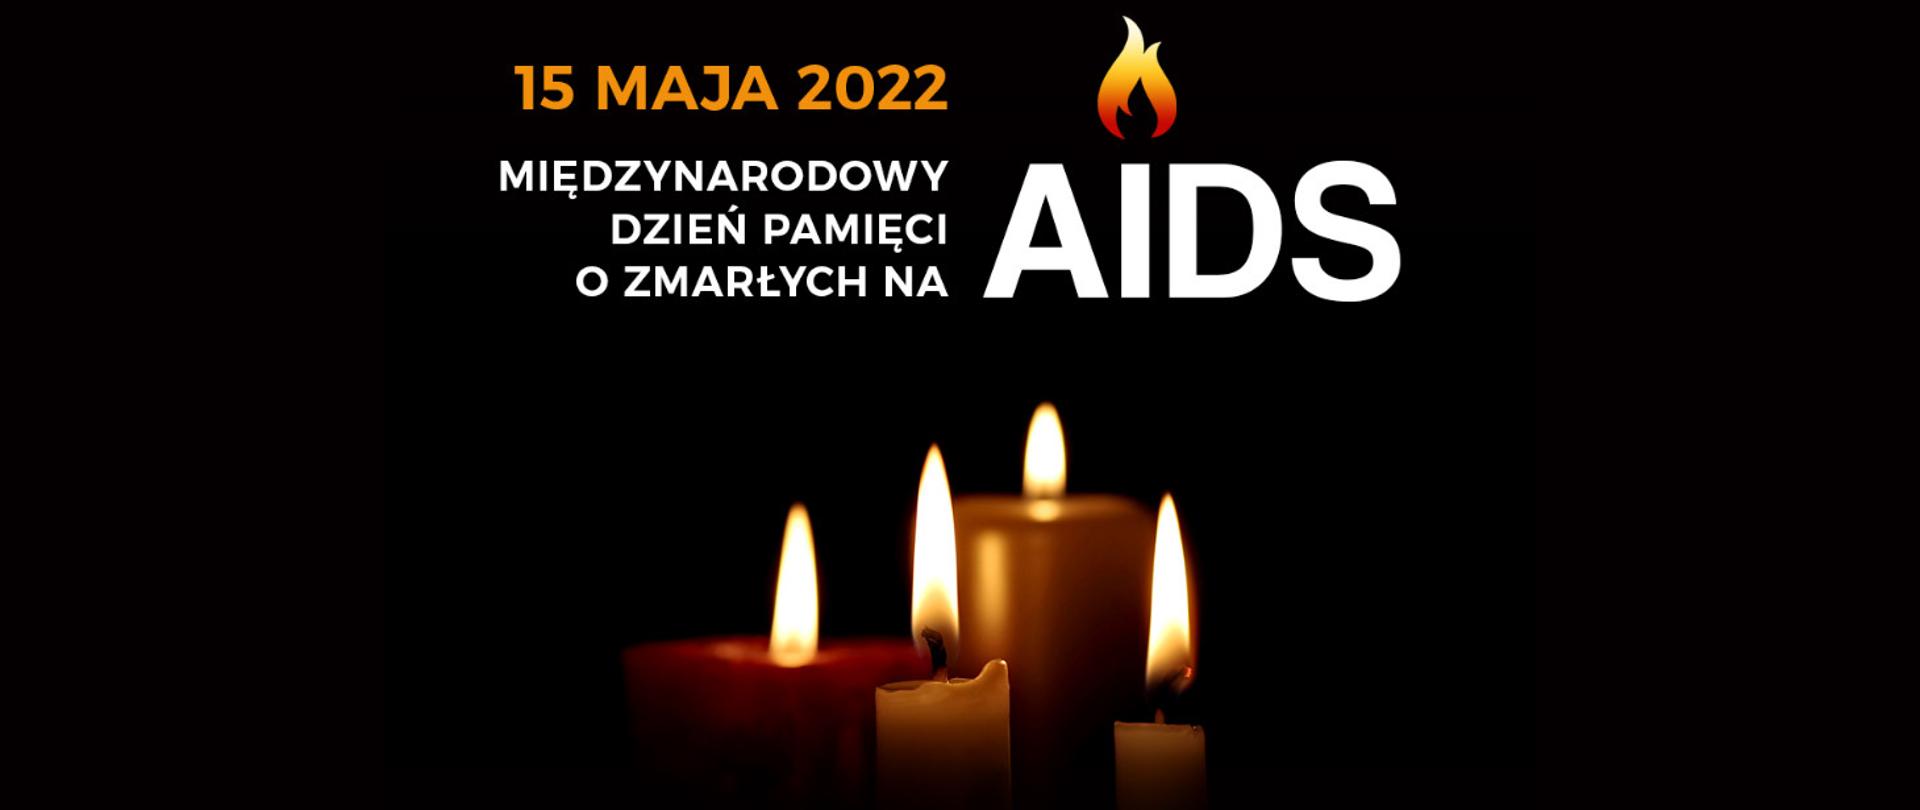 15 maja 2022 - Międzynarodowy Dzień Pamięci o Zmarłych na AIDS - świeczki, czarne tło